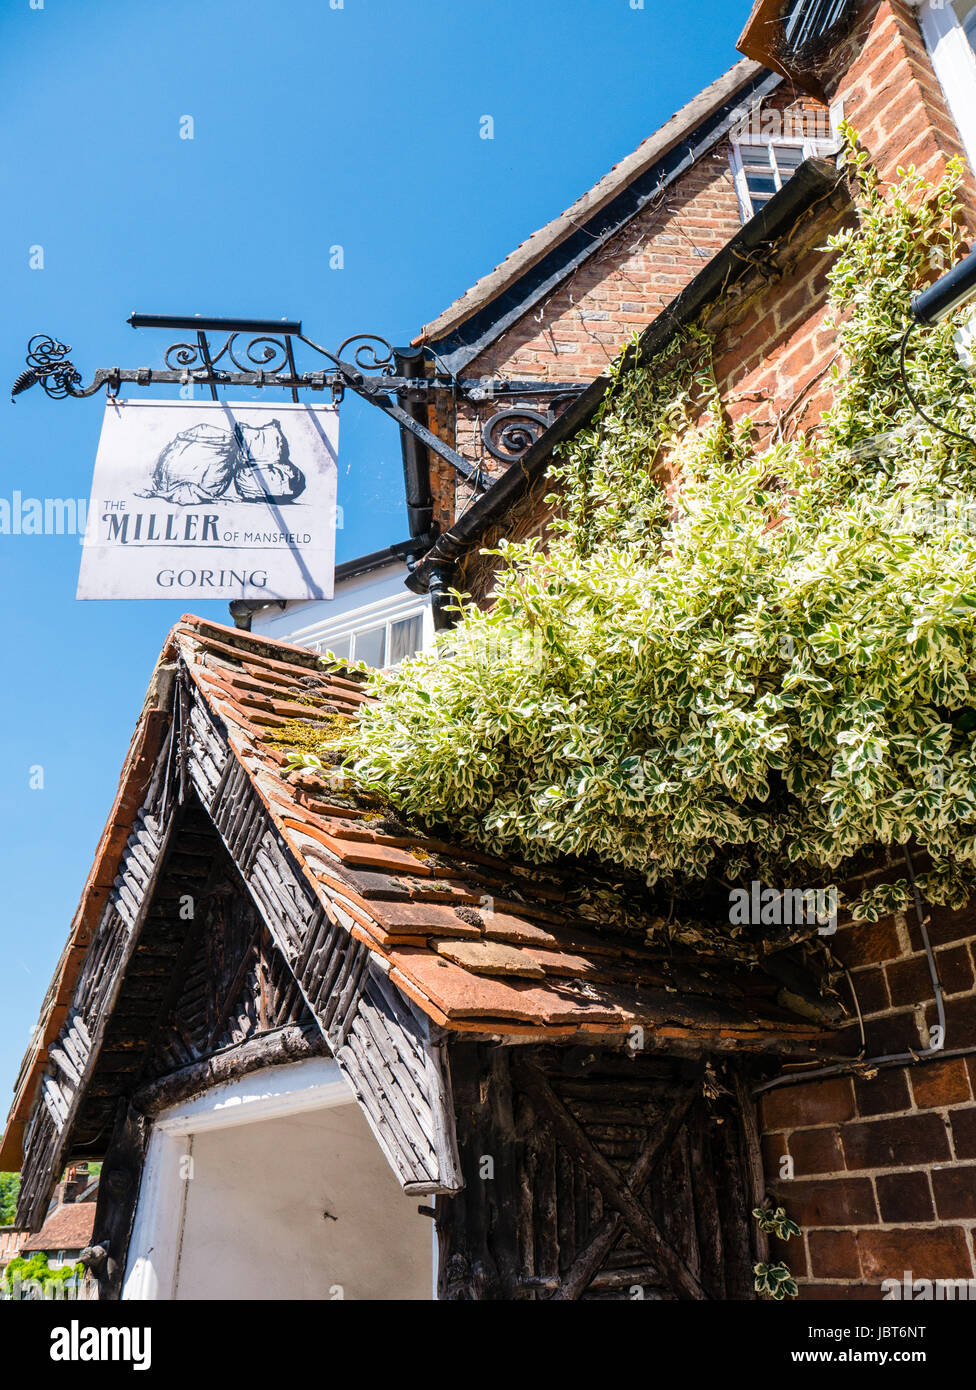 Der Müller von Mansfield, Restaurant und Gasthaus, Goring-on-Thames, Oxfordshire, England Stockfoto